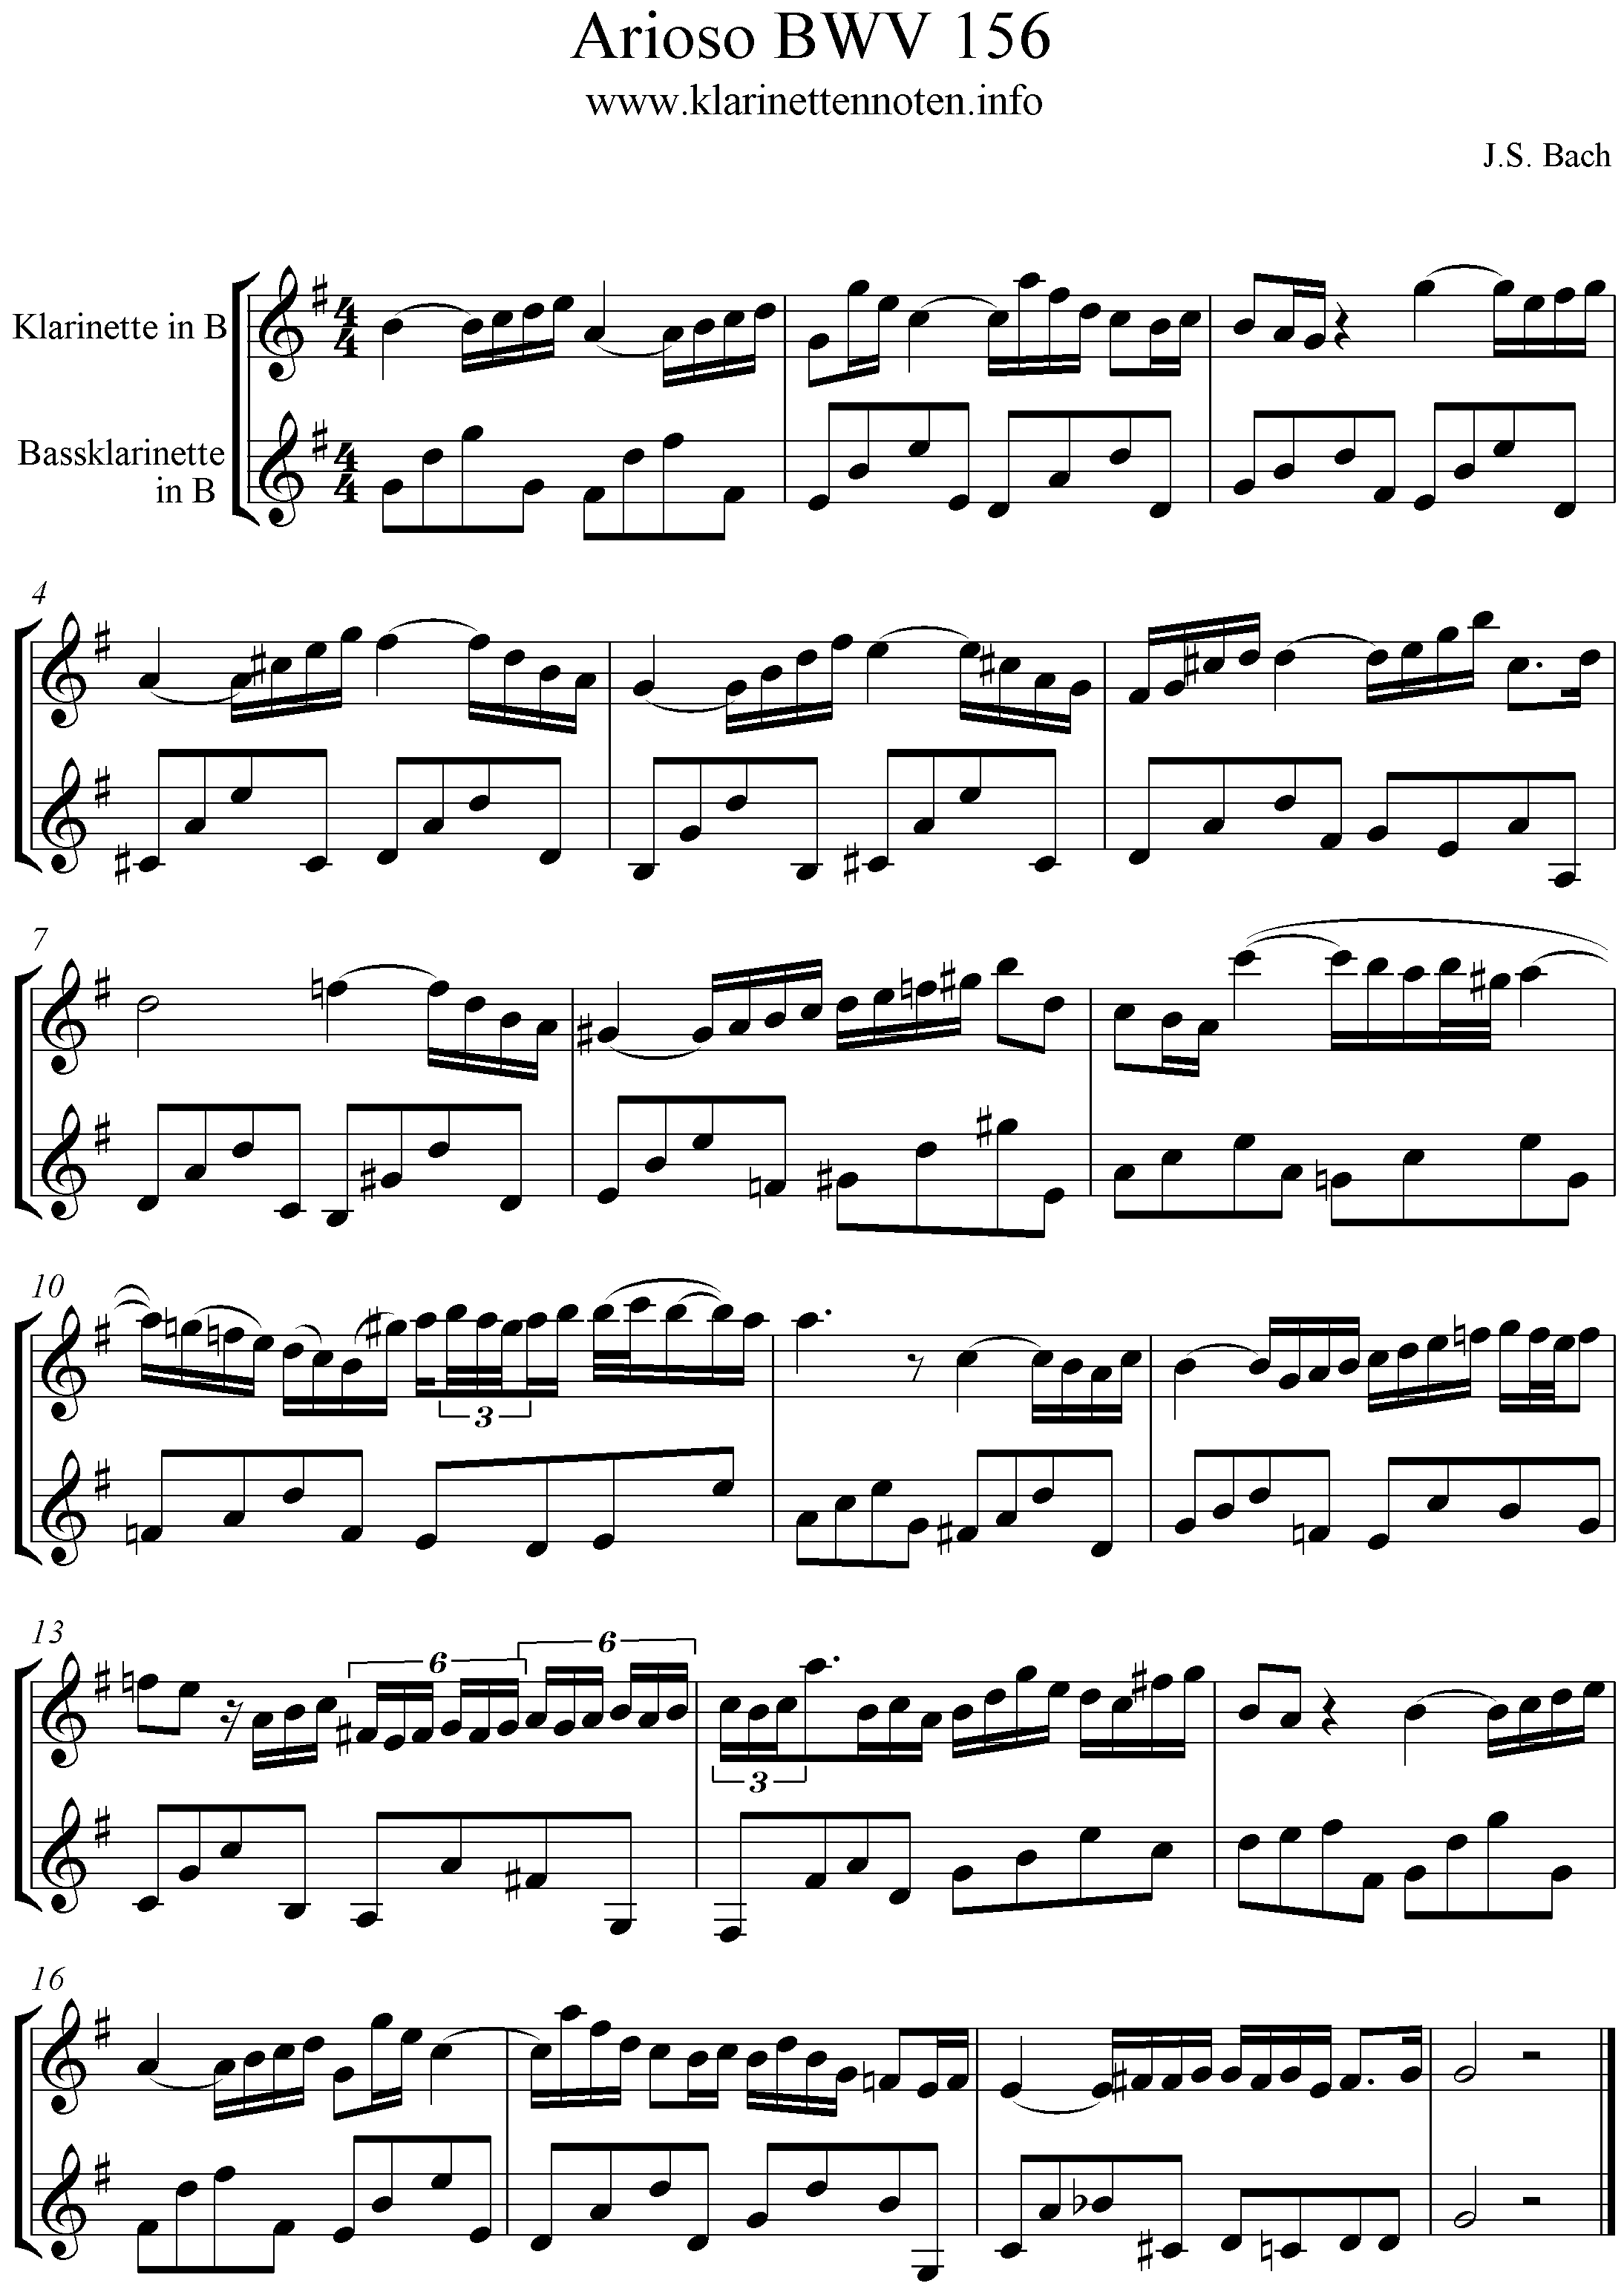 Arioso, BWV156, Duo, Clarinet